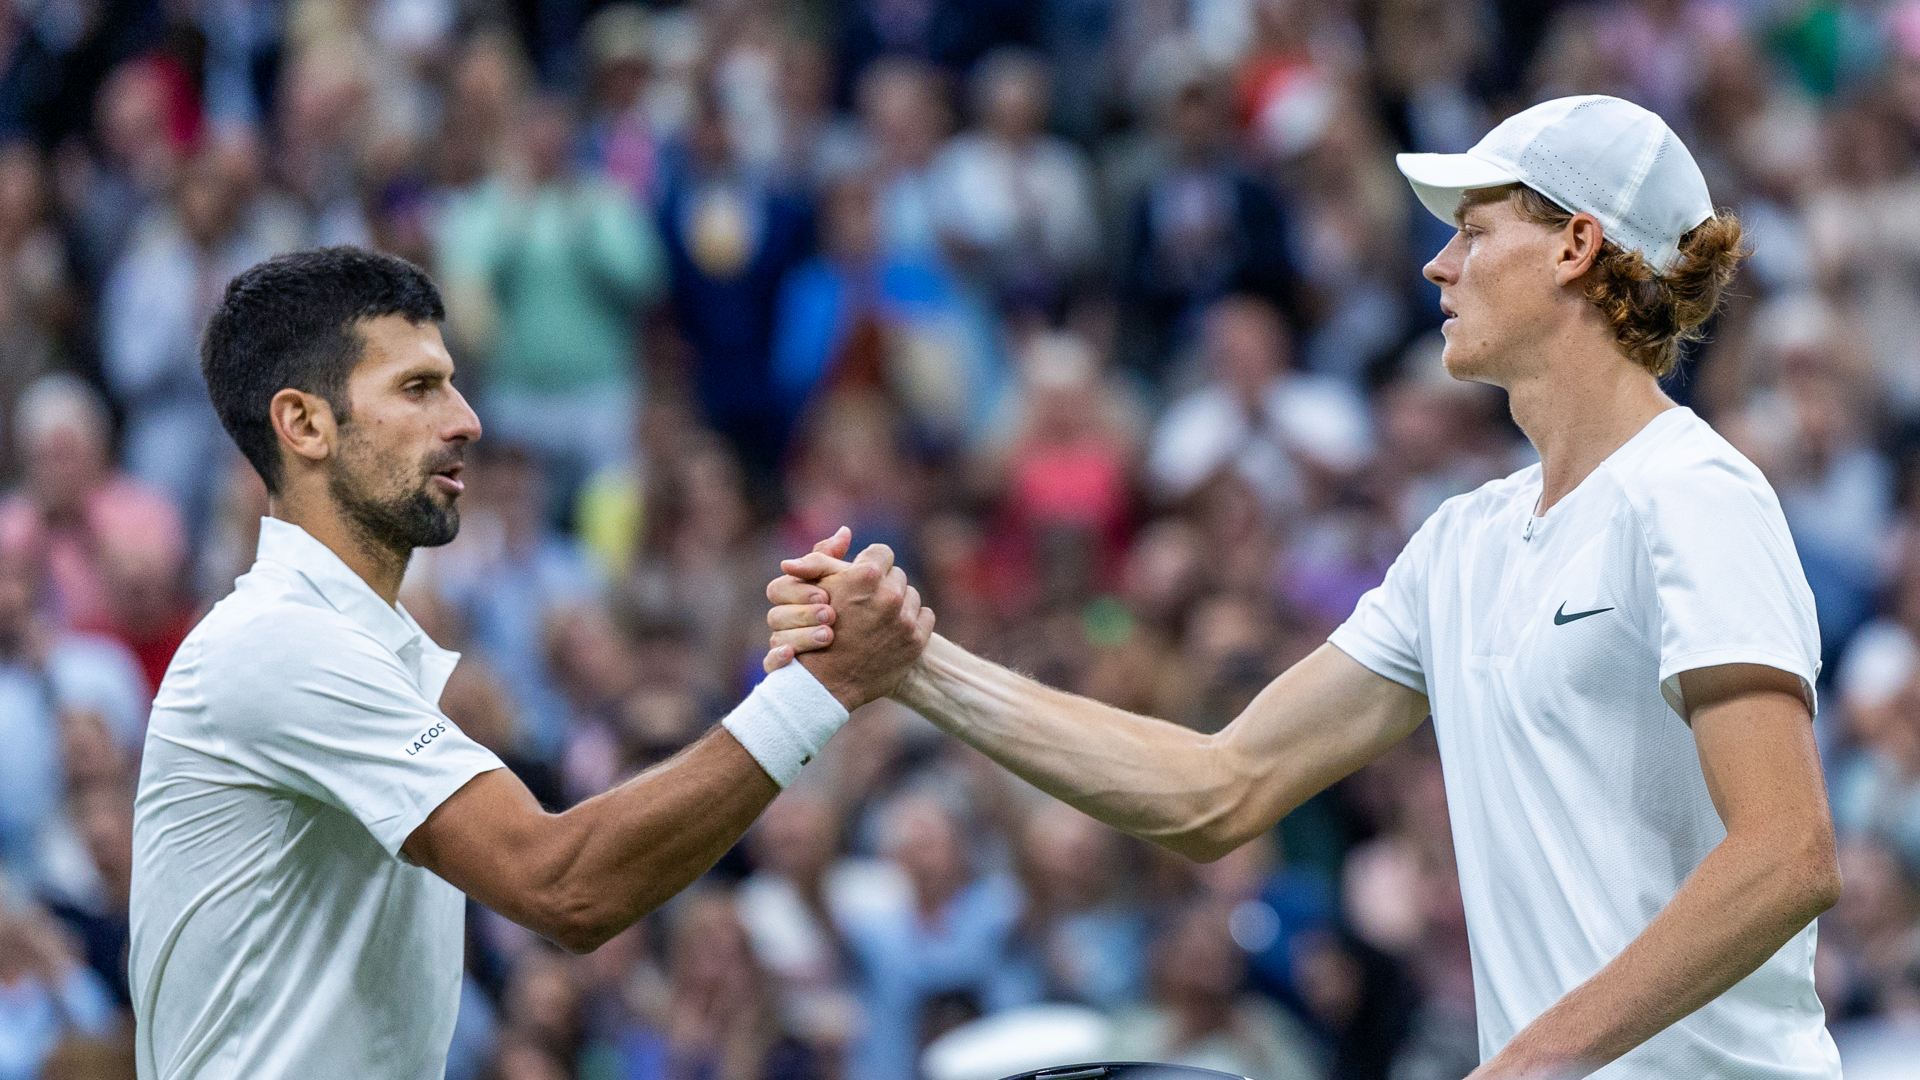 Sinner versus Hanfmann at Wimbledon